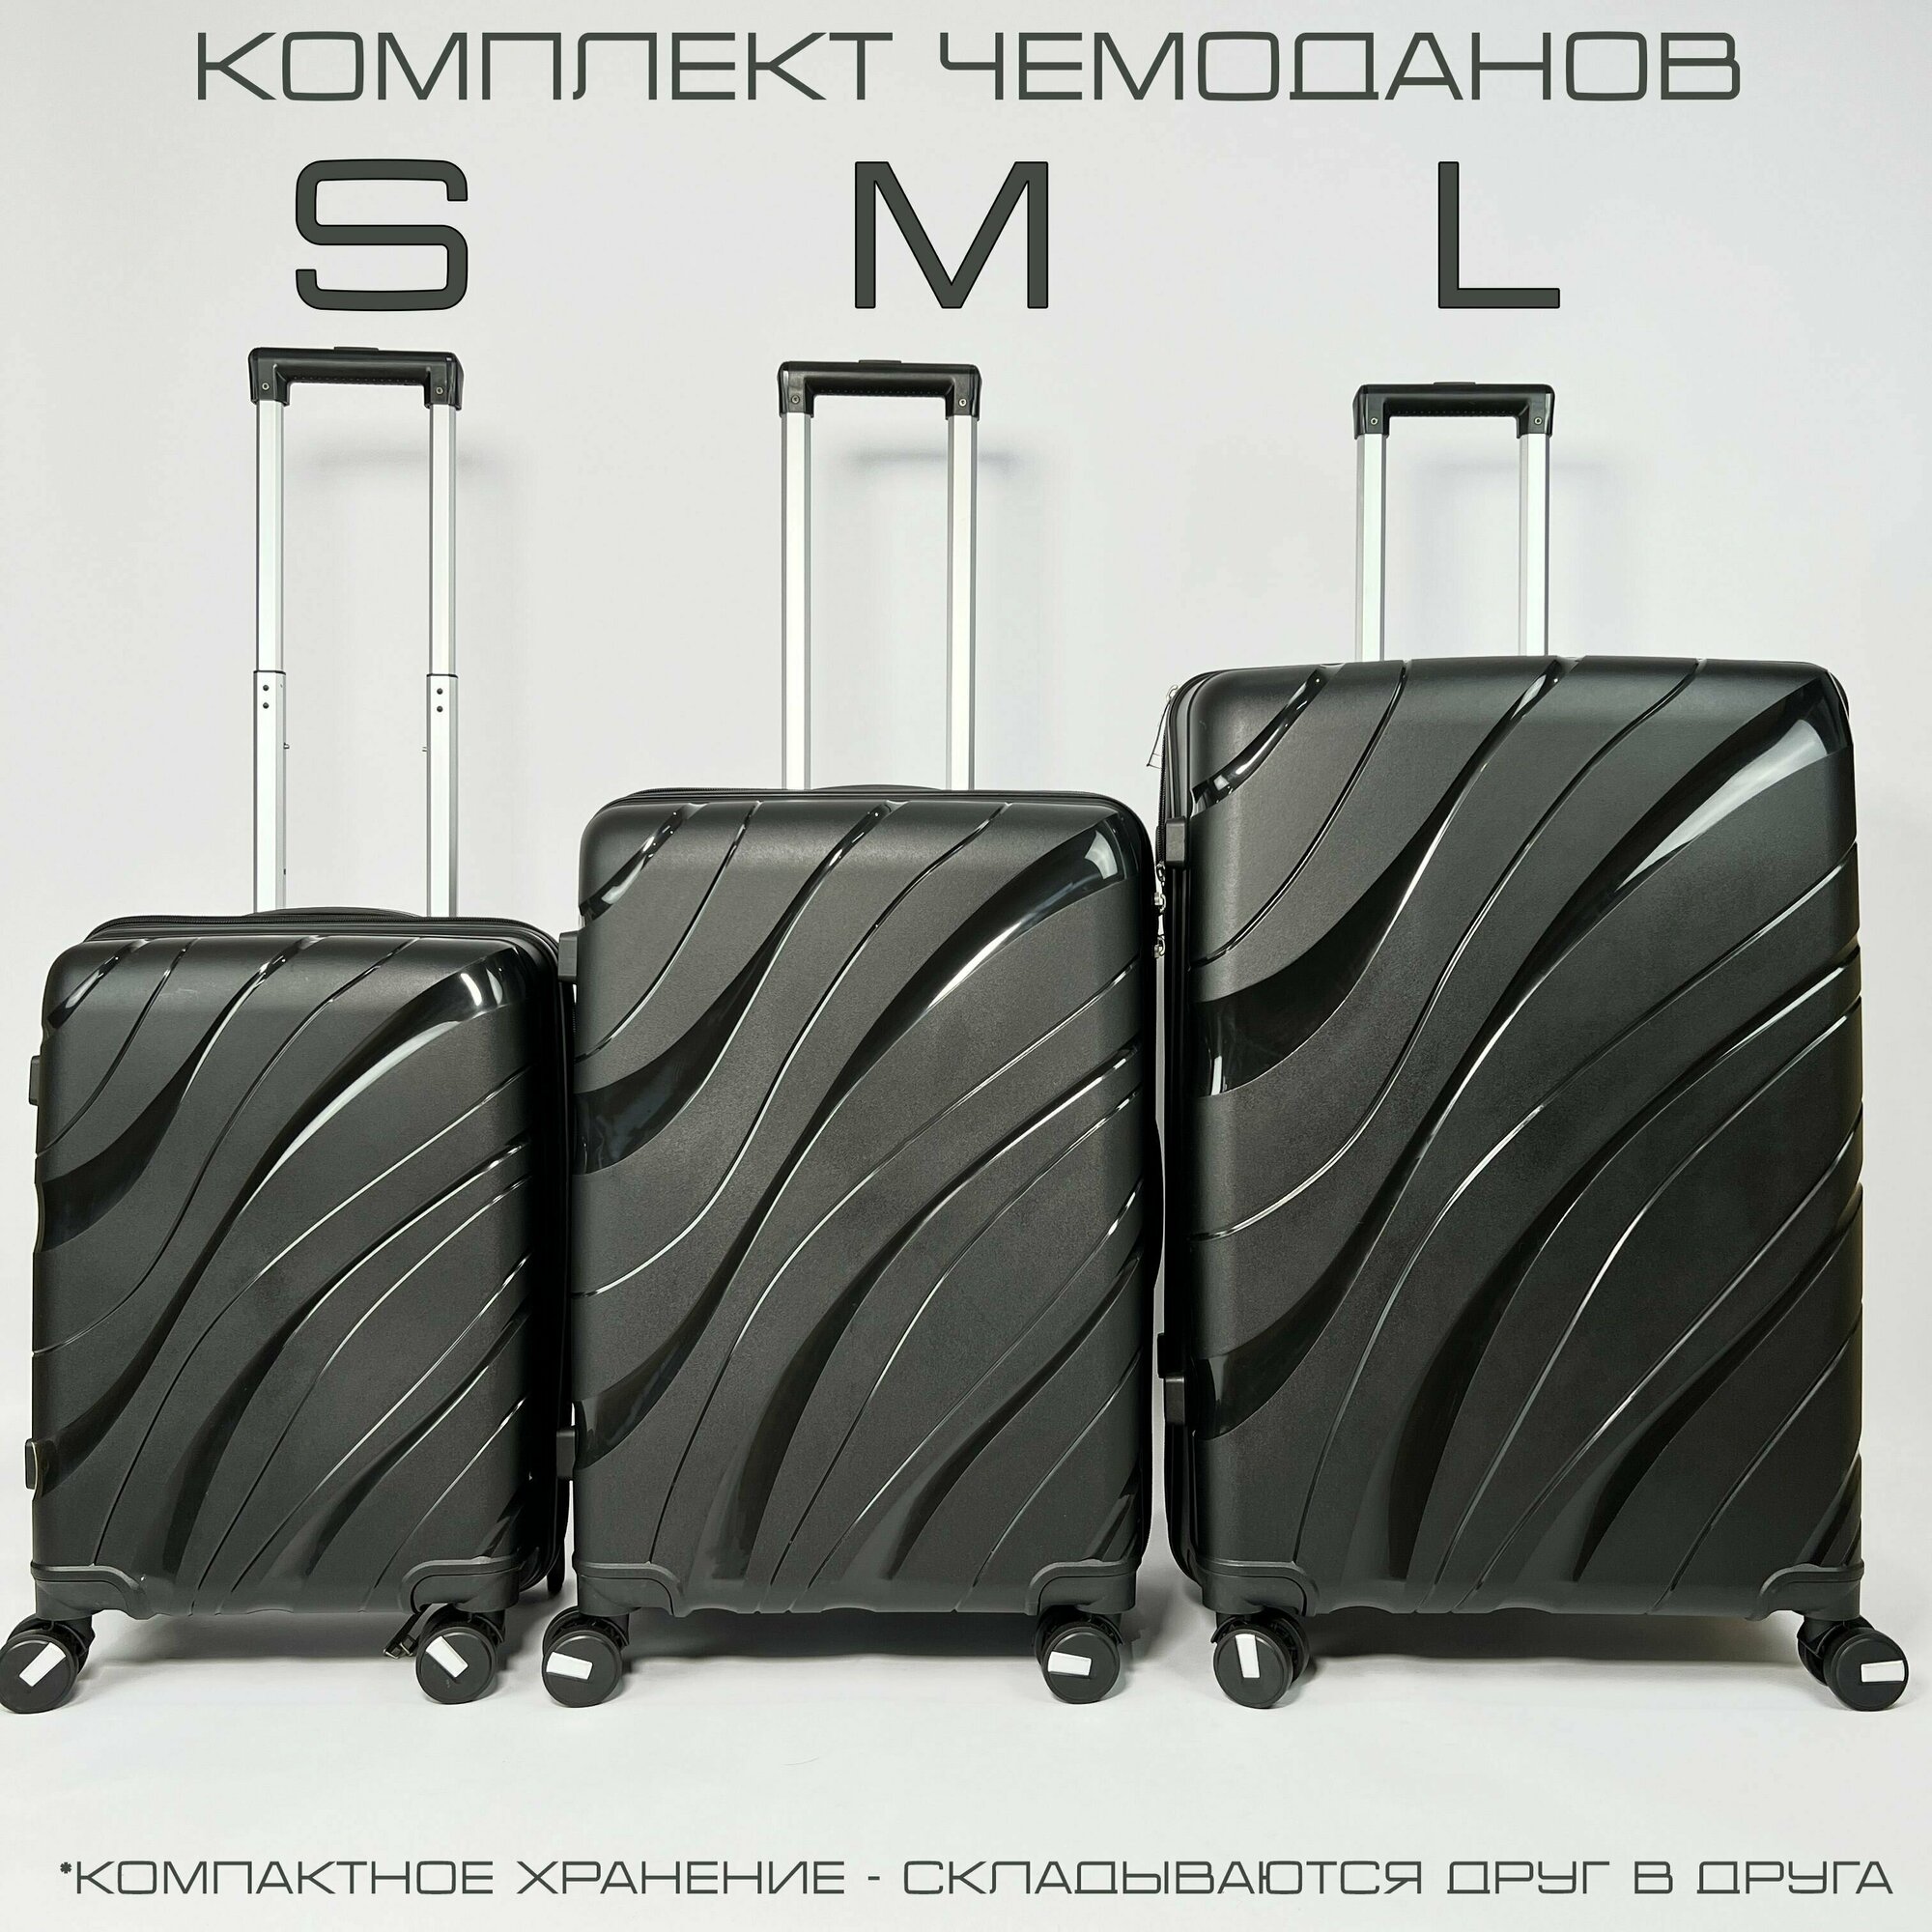 Комплект чемоданов KONGUNLA, 3 шт.